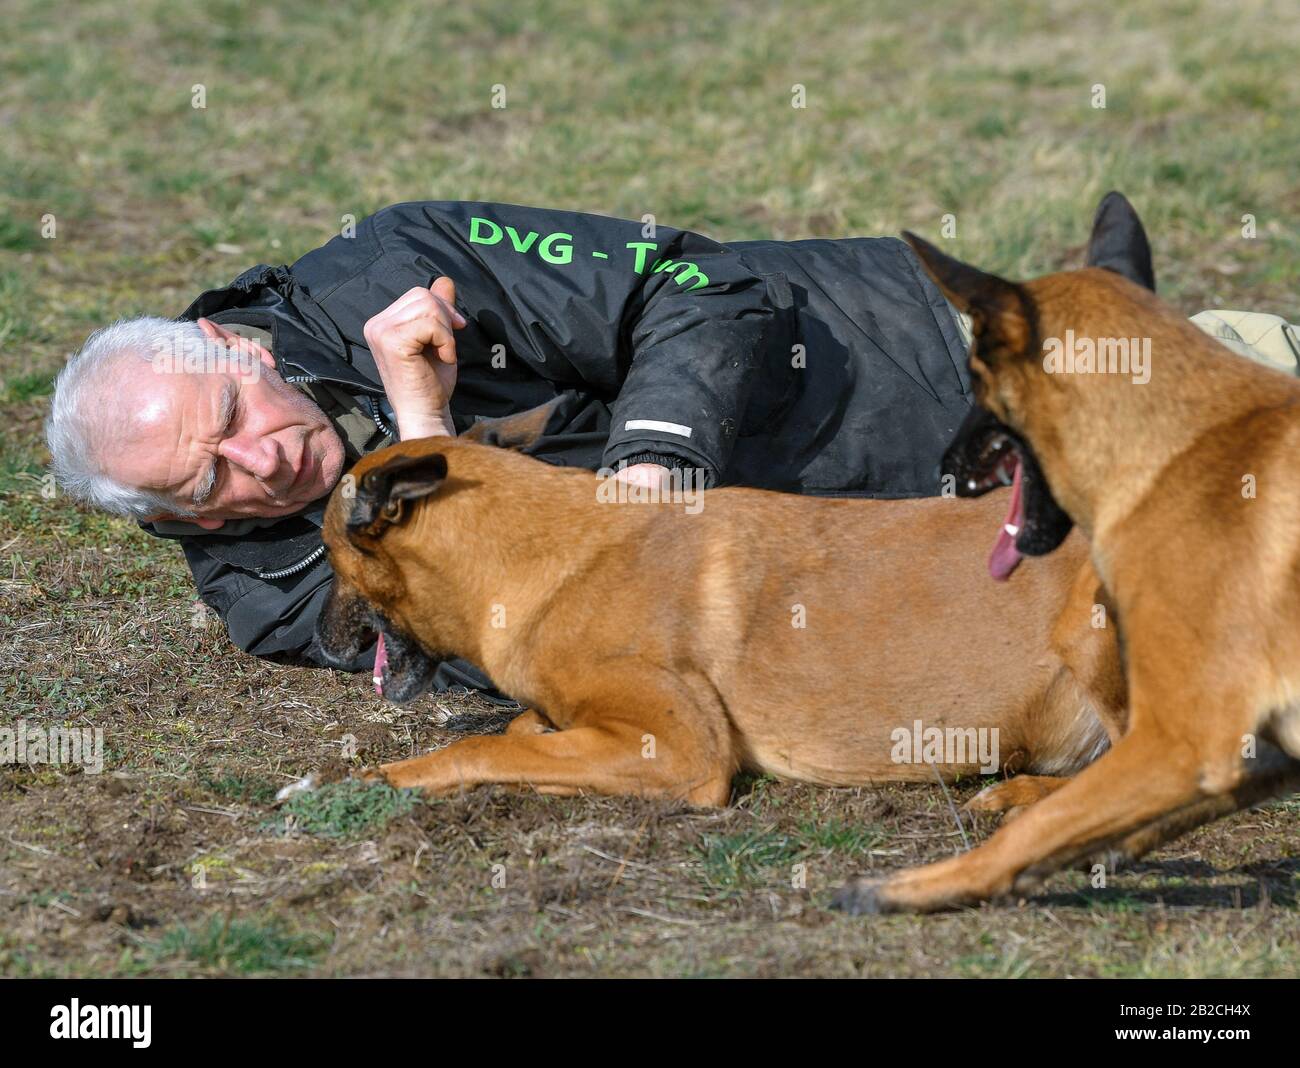 Wriezen, Alemania. 27 de febrero de 2020. Günter Hytra, amigo de los  deportes de perros, con sus dos perros Athos (l) y Eddi, los llamados  Malinois, una variedad del Pastor belga. La